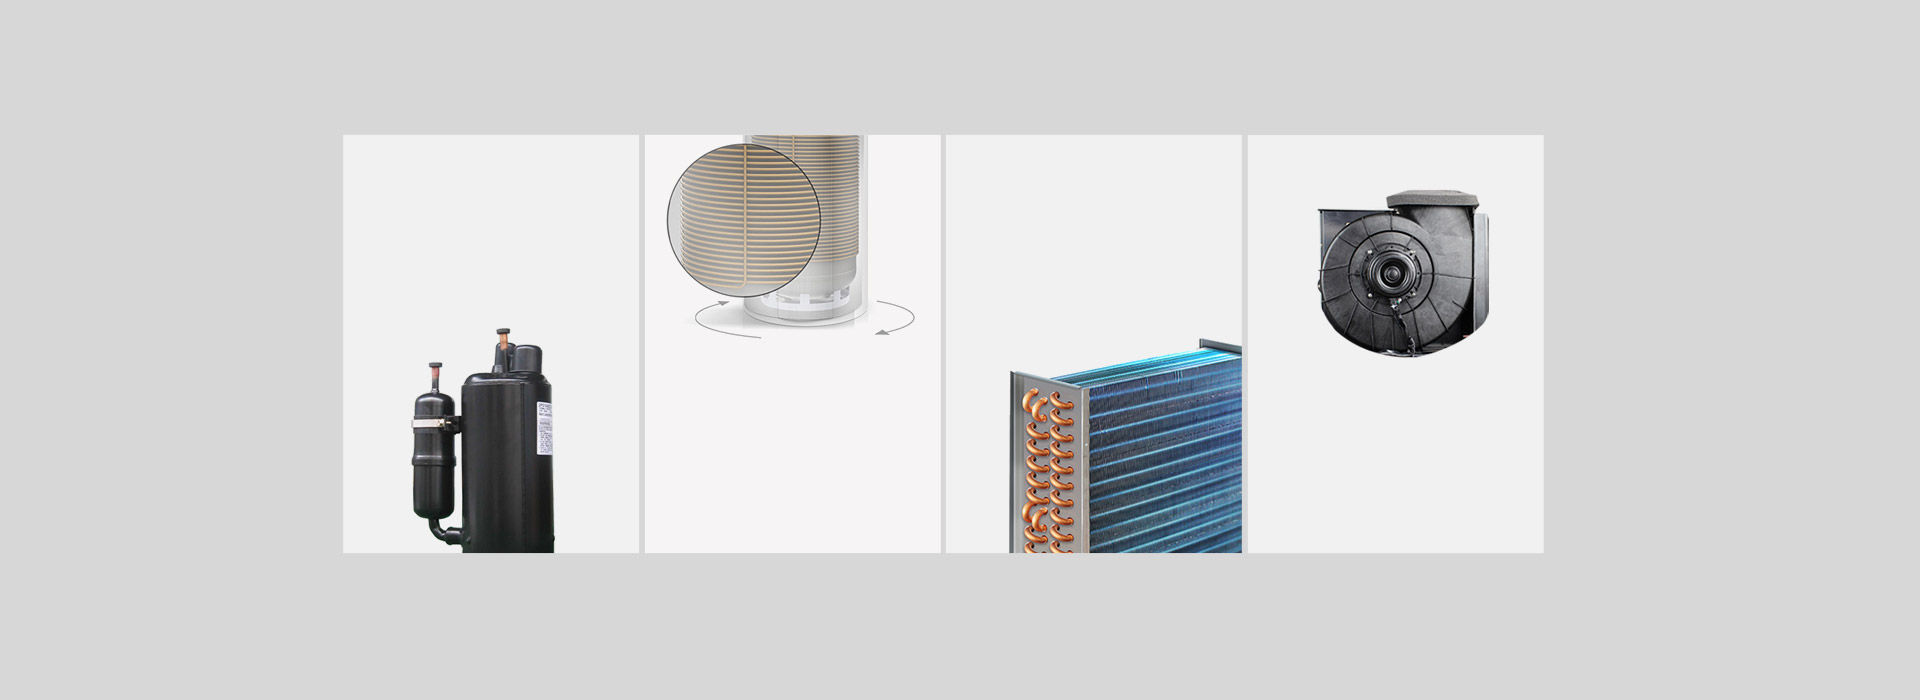 芬尼空气能热水器豪华型300Lplus核心部件